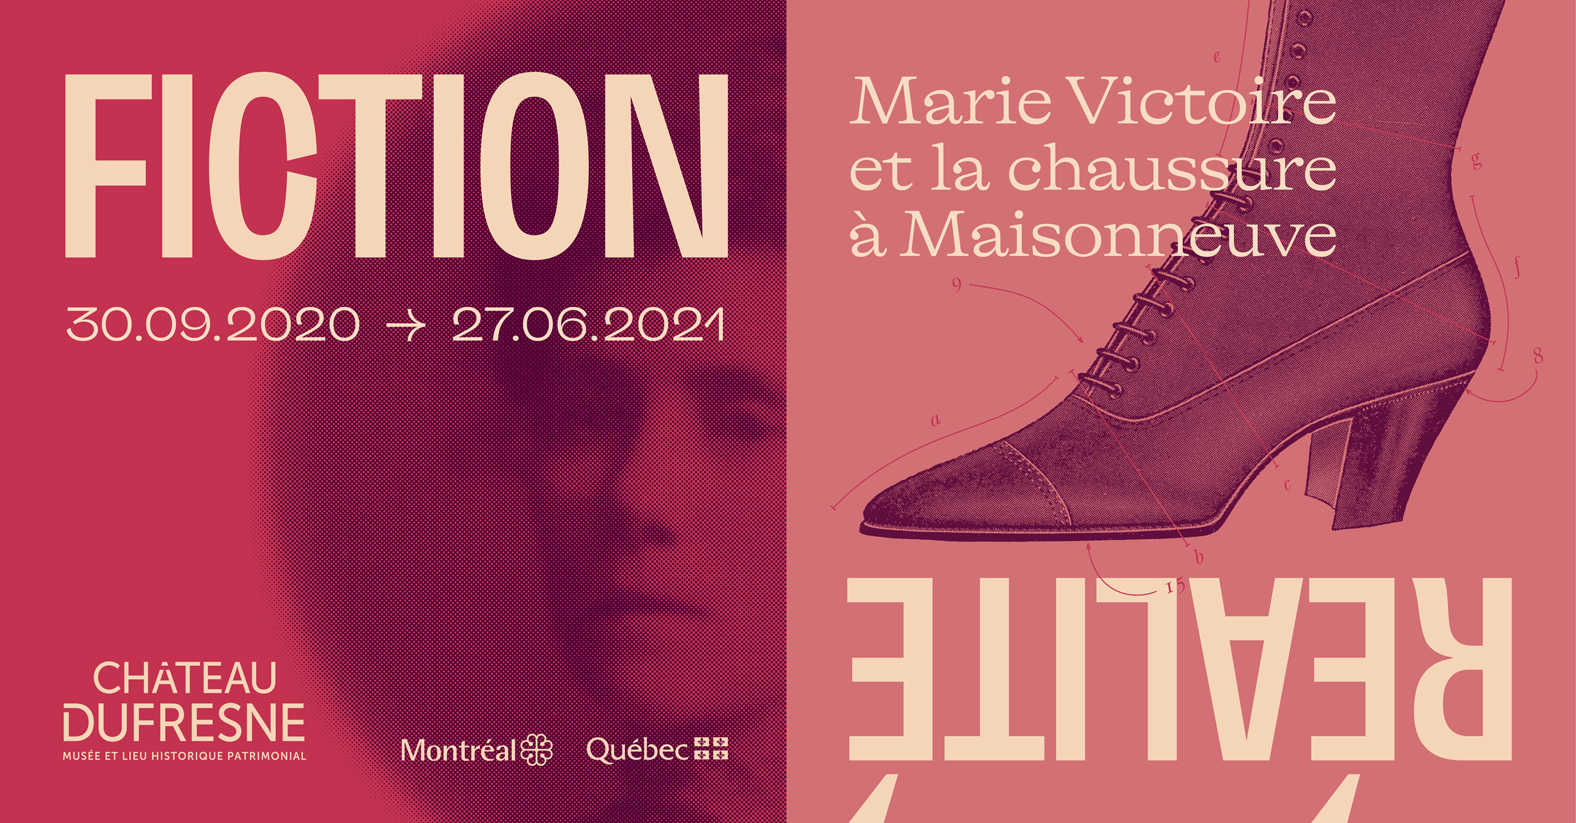 FICTION\RÉALITÉ. - Marie Victoire et la chaussure à Maisonneuve